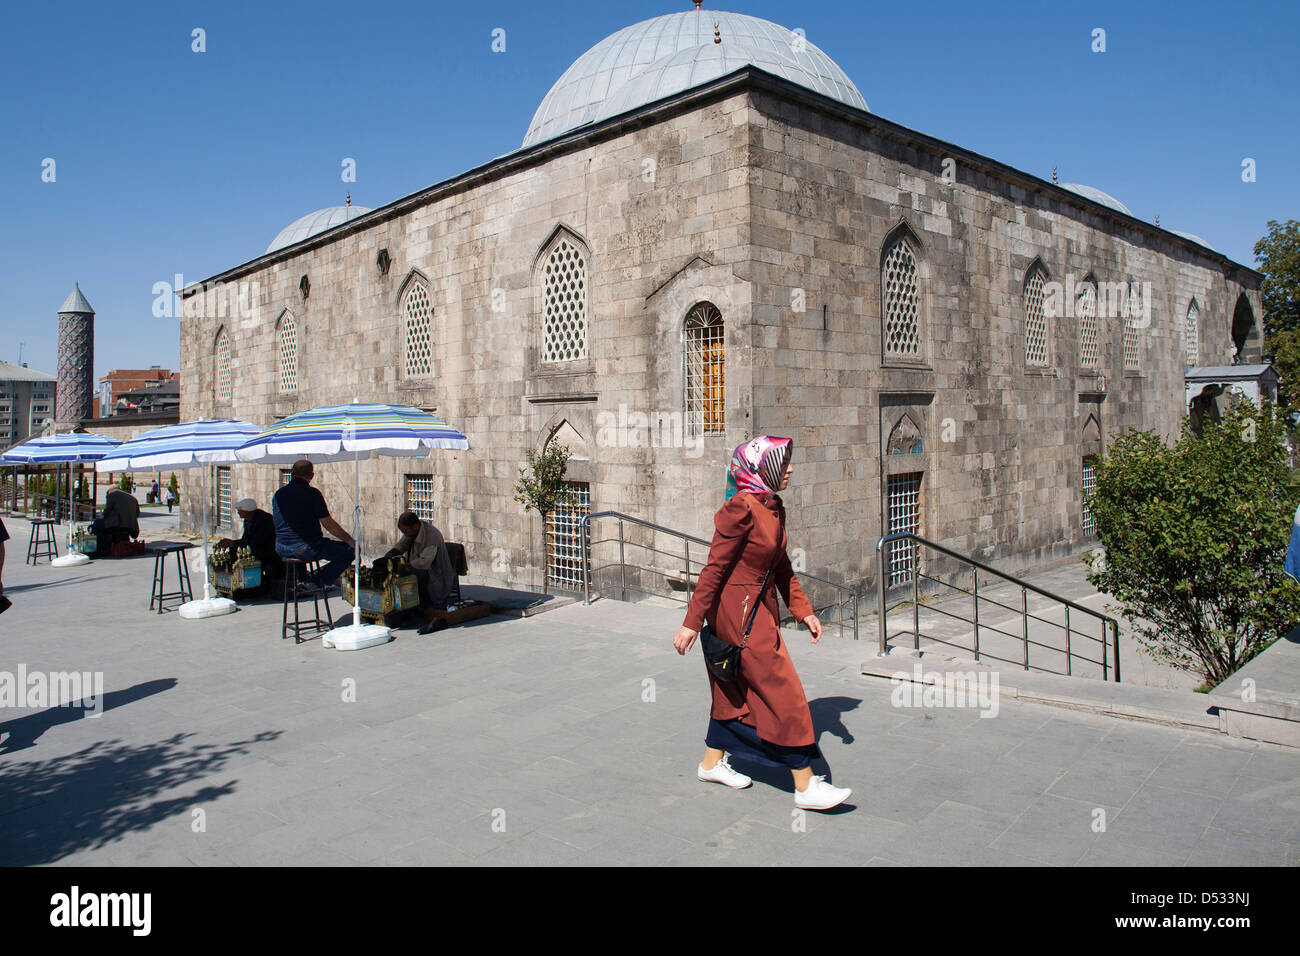 Lala mustafa pasa camii ou lalapasa camii, ville d'Erzurum, l'Anatolie orientale, la Turquie, l'Asie Banque D'Images